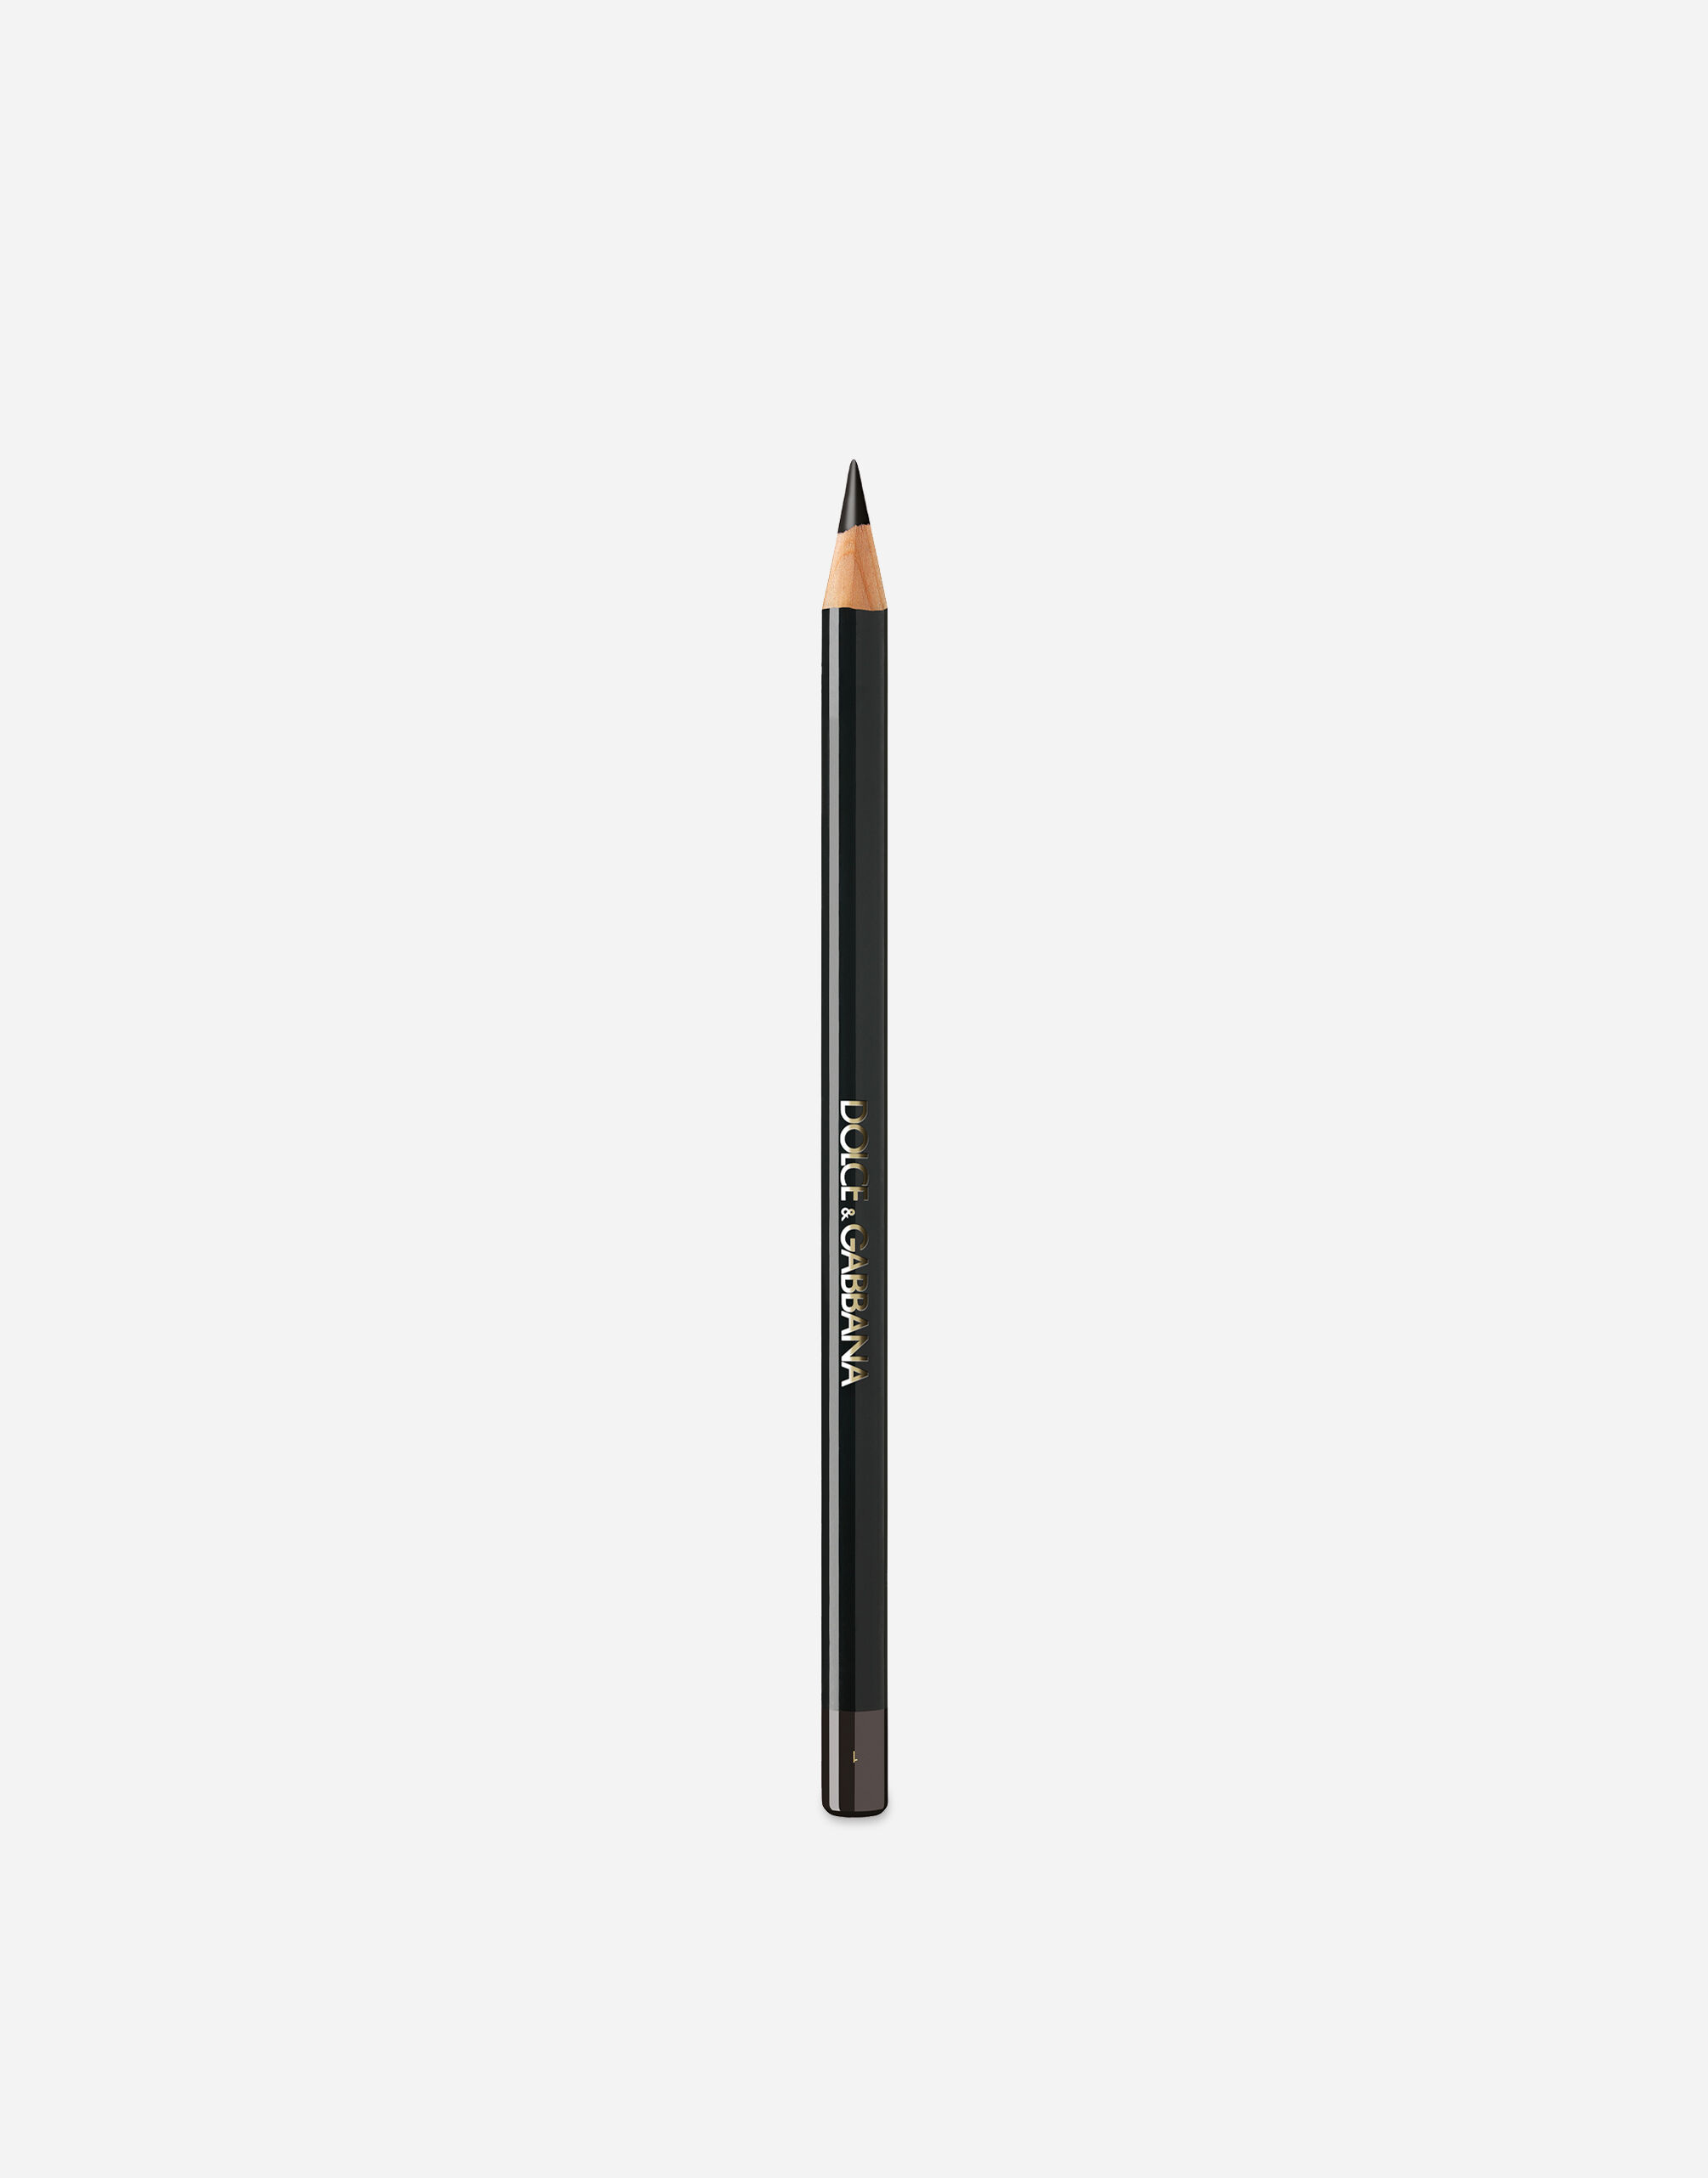 Карандаш-кайал для глаз DOLCE & GABBANA Khol Pencil стойкий, тон 1 True Black, 2,04 г карандаш для глаз lancome drama liqui pencil 24h гелевый 01 cafe noir 1 2 г